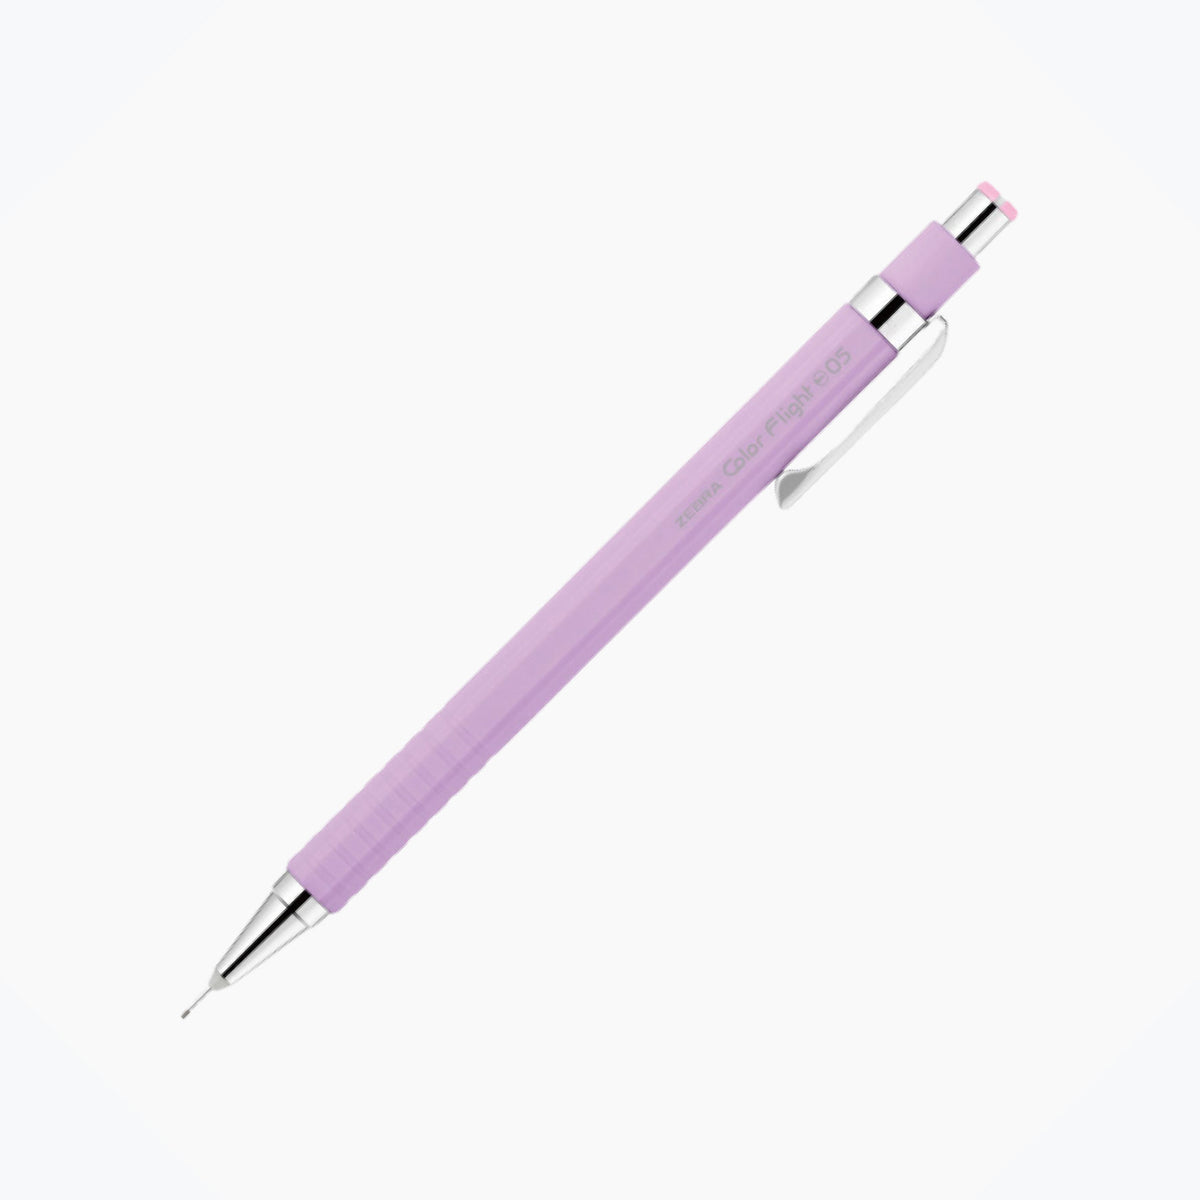 Zebra - Mechanical Pencil - Color Flight Pastel - 0.5mm - Violet <Outgoing>